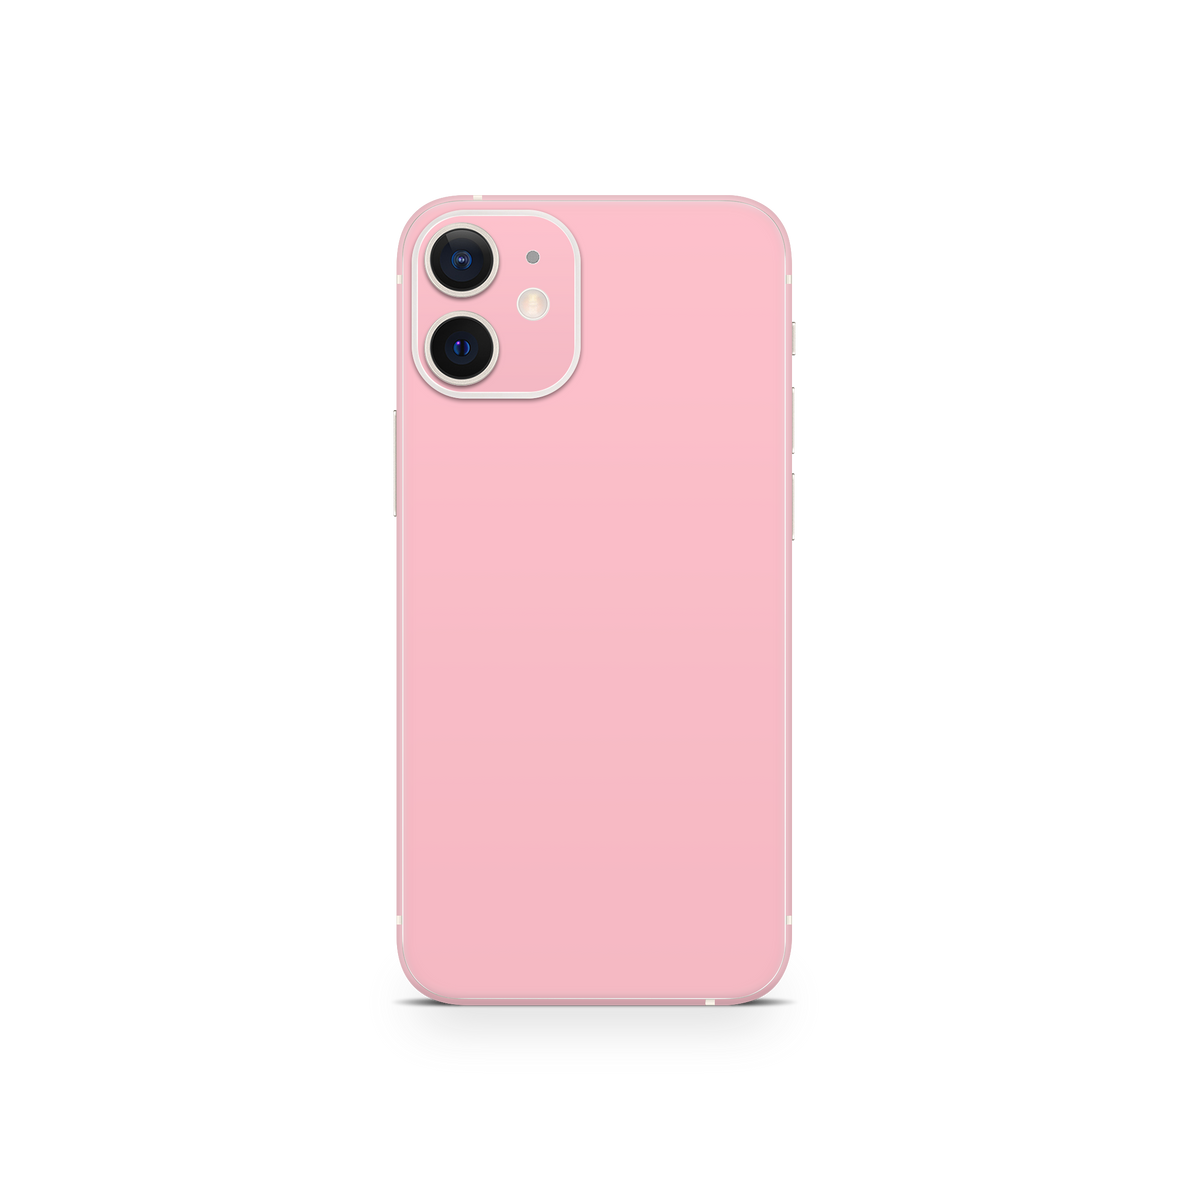 Apple iPhone 12 Mini Blush Pink Skin